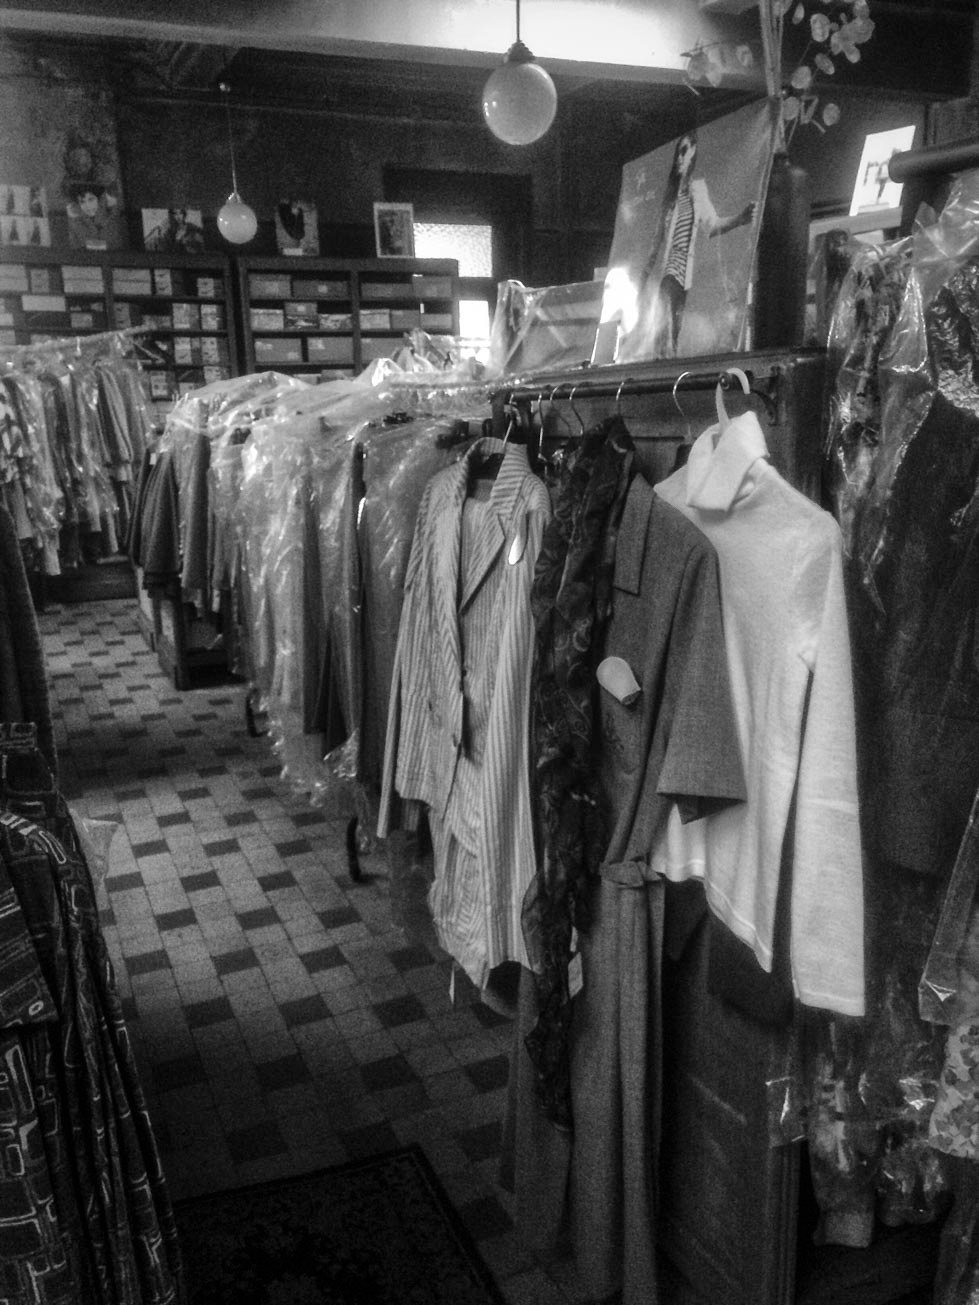 belgique belgium clothes Clothing Fashion  monochrome noir et blanc Photographie shop vintage